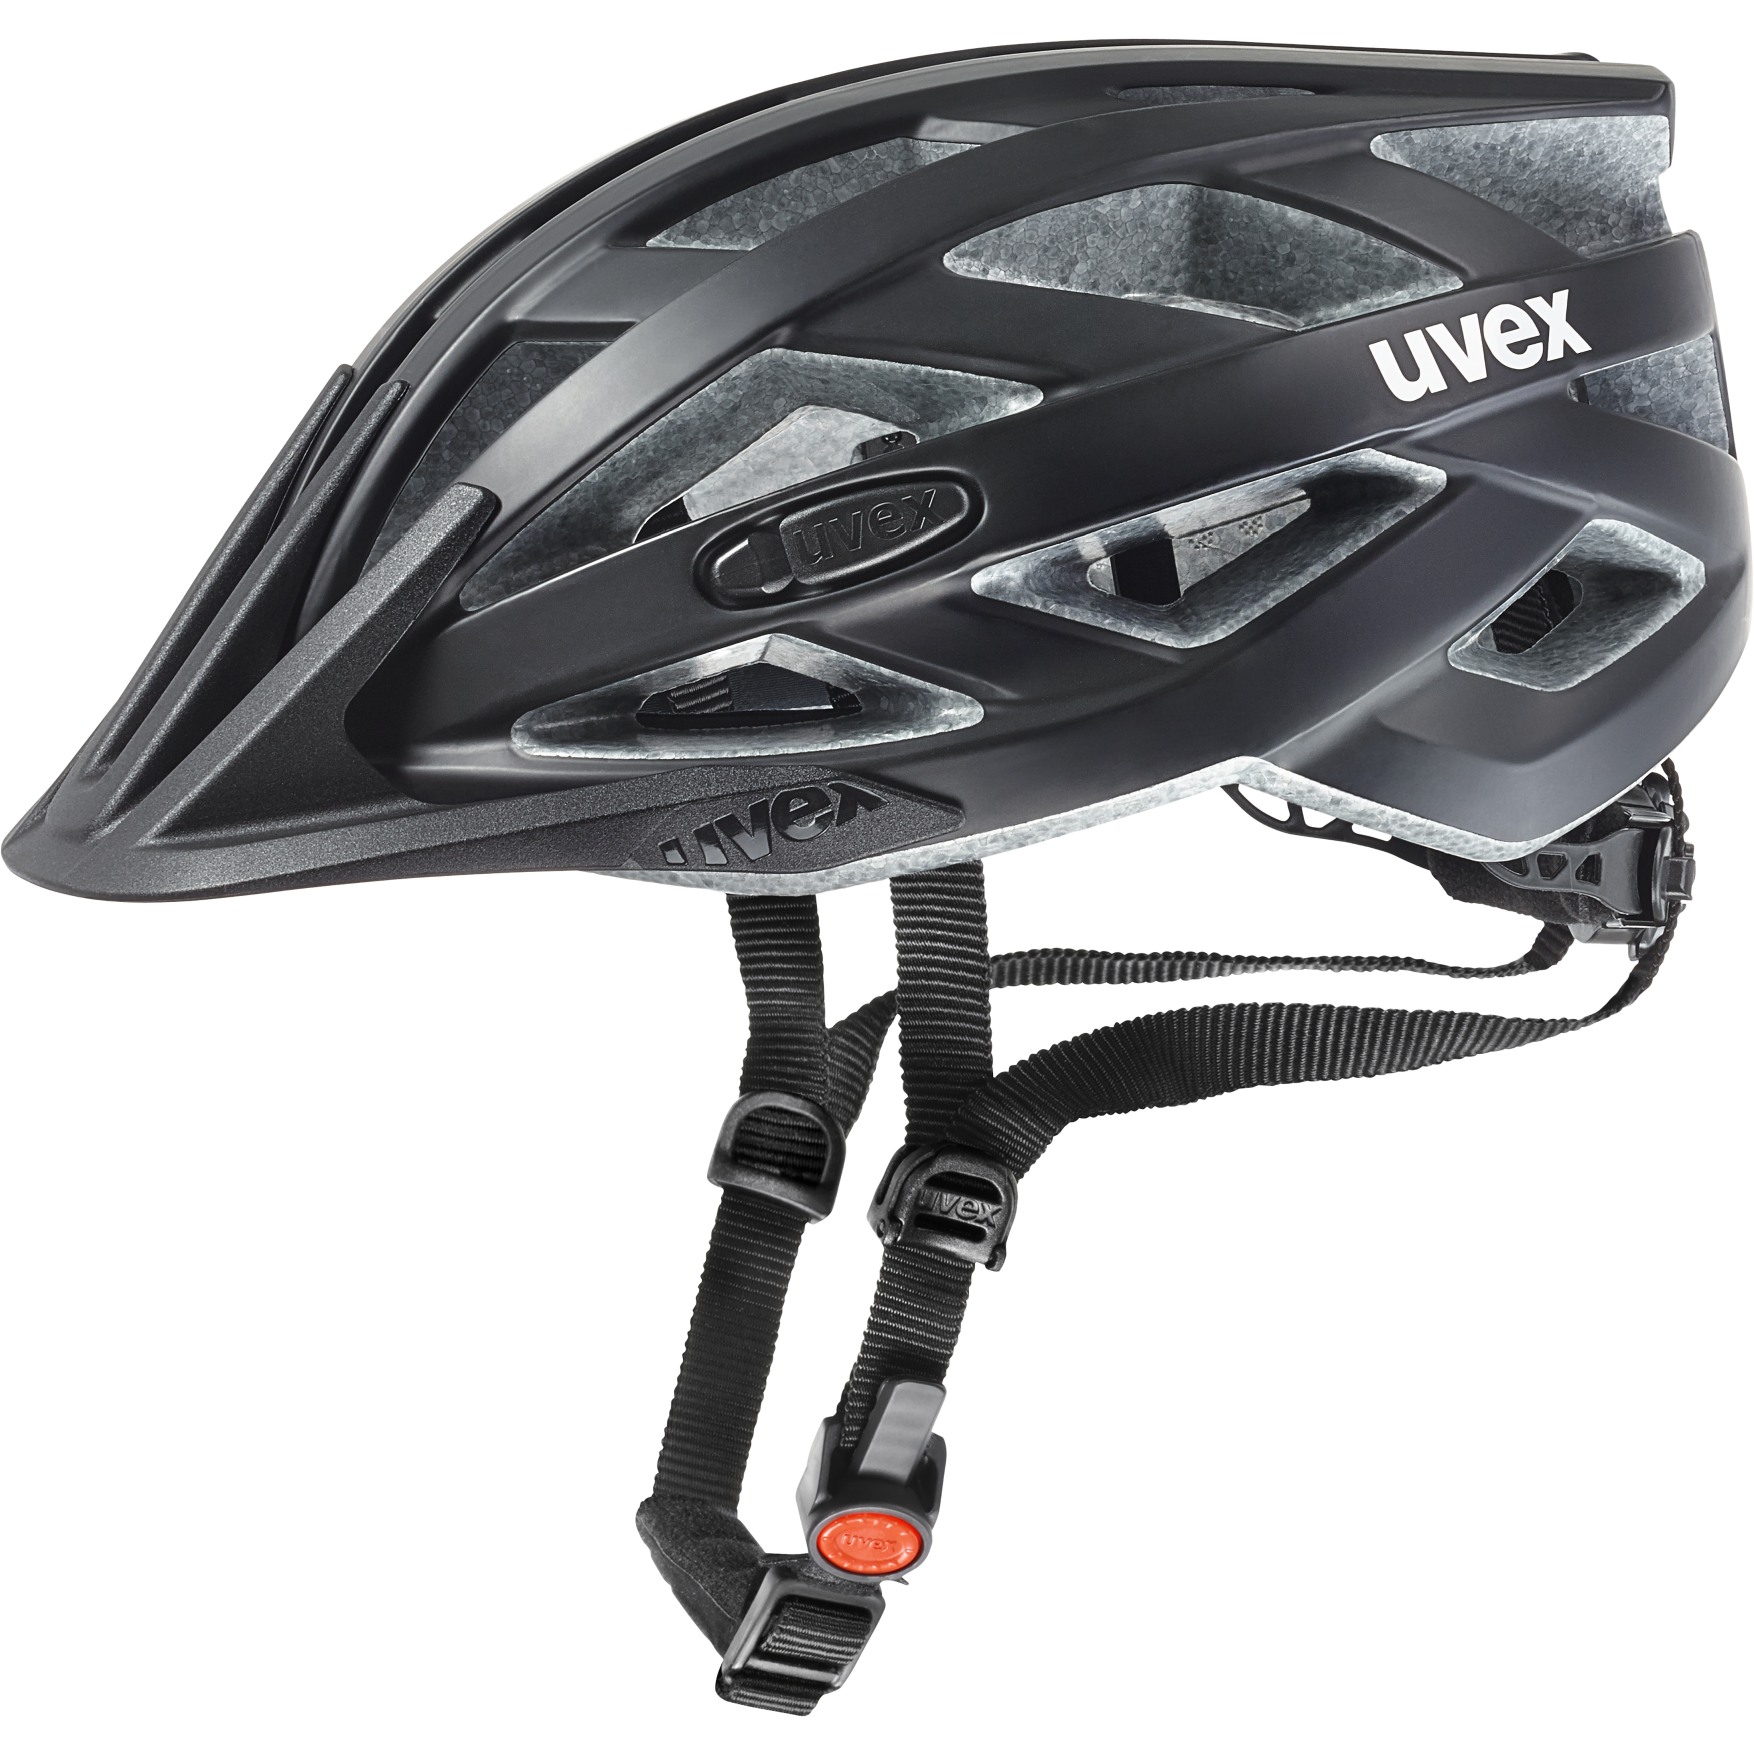 Produktbild von Uvex i-vo cc Helm - schwarz matt